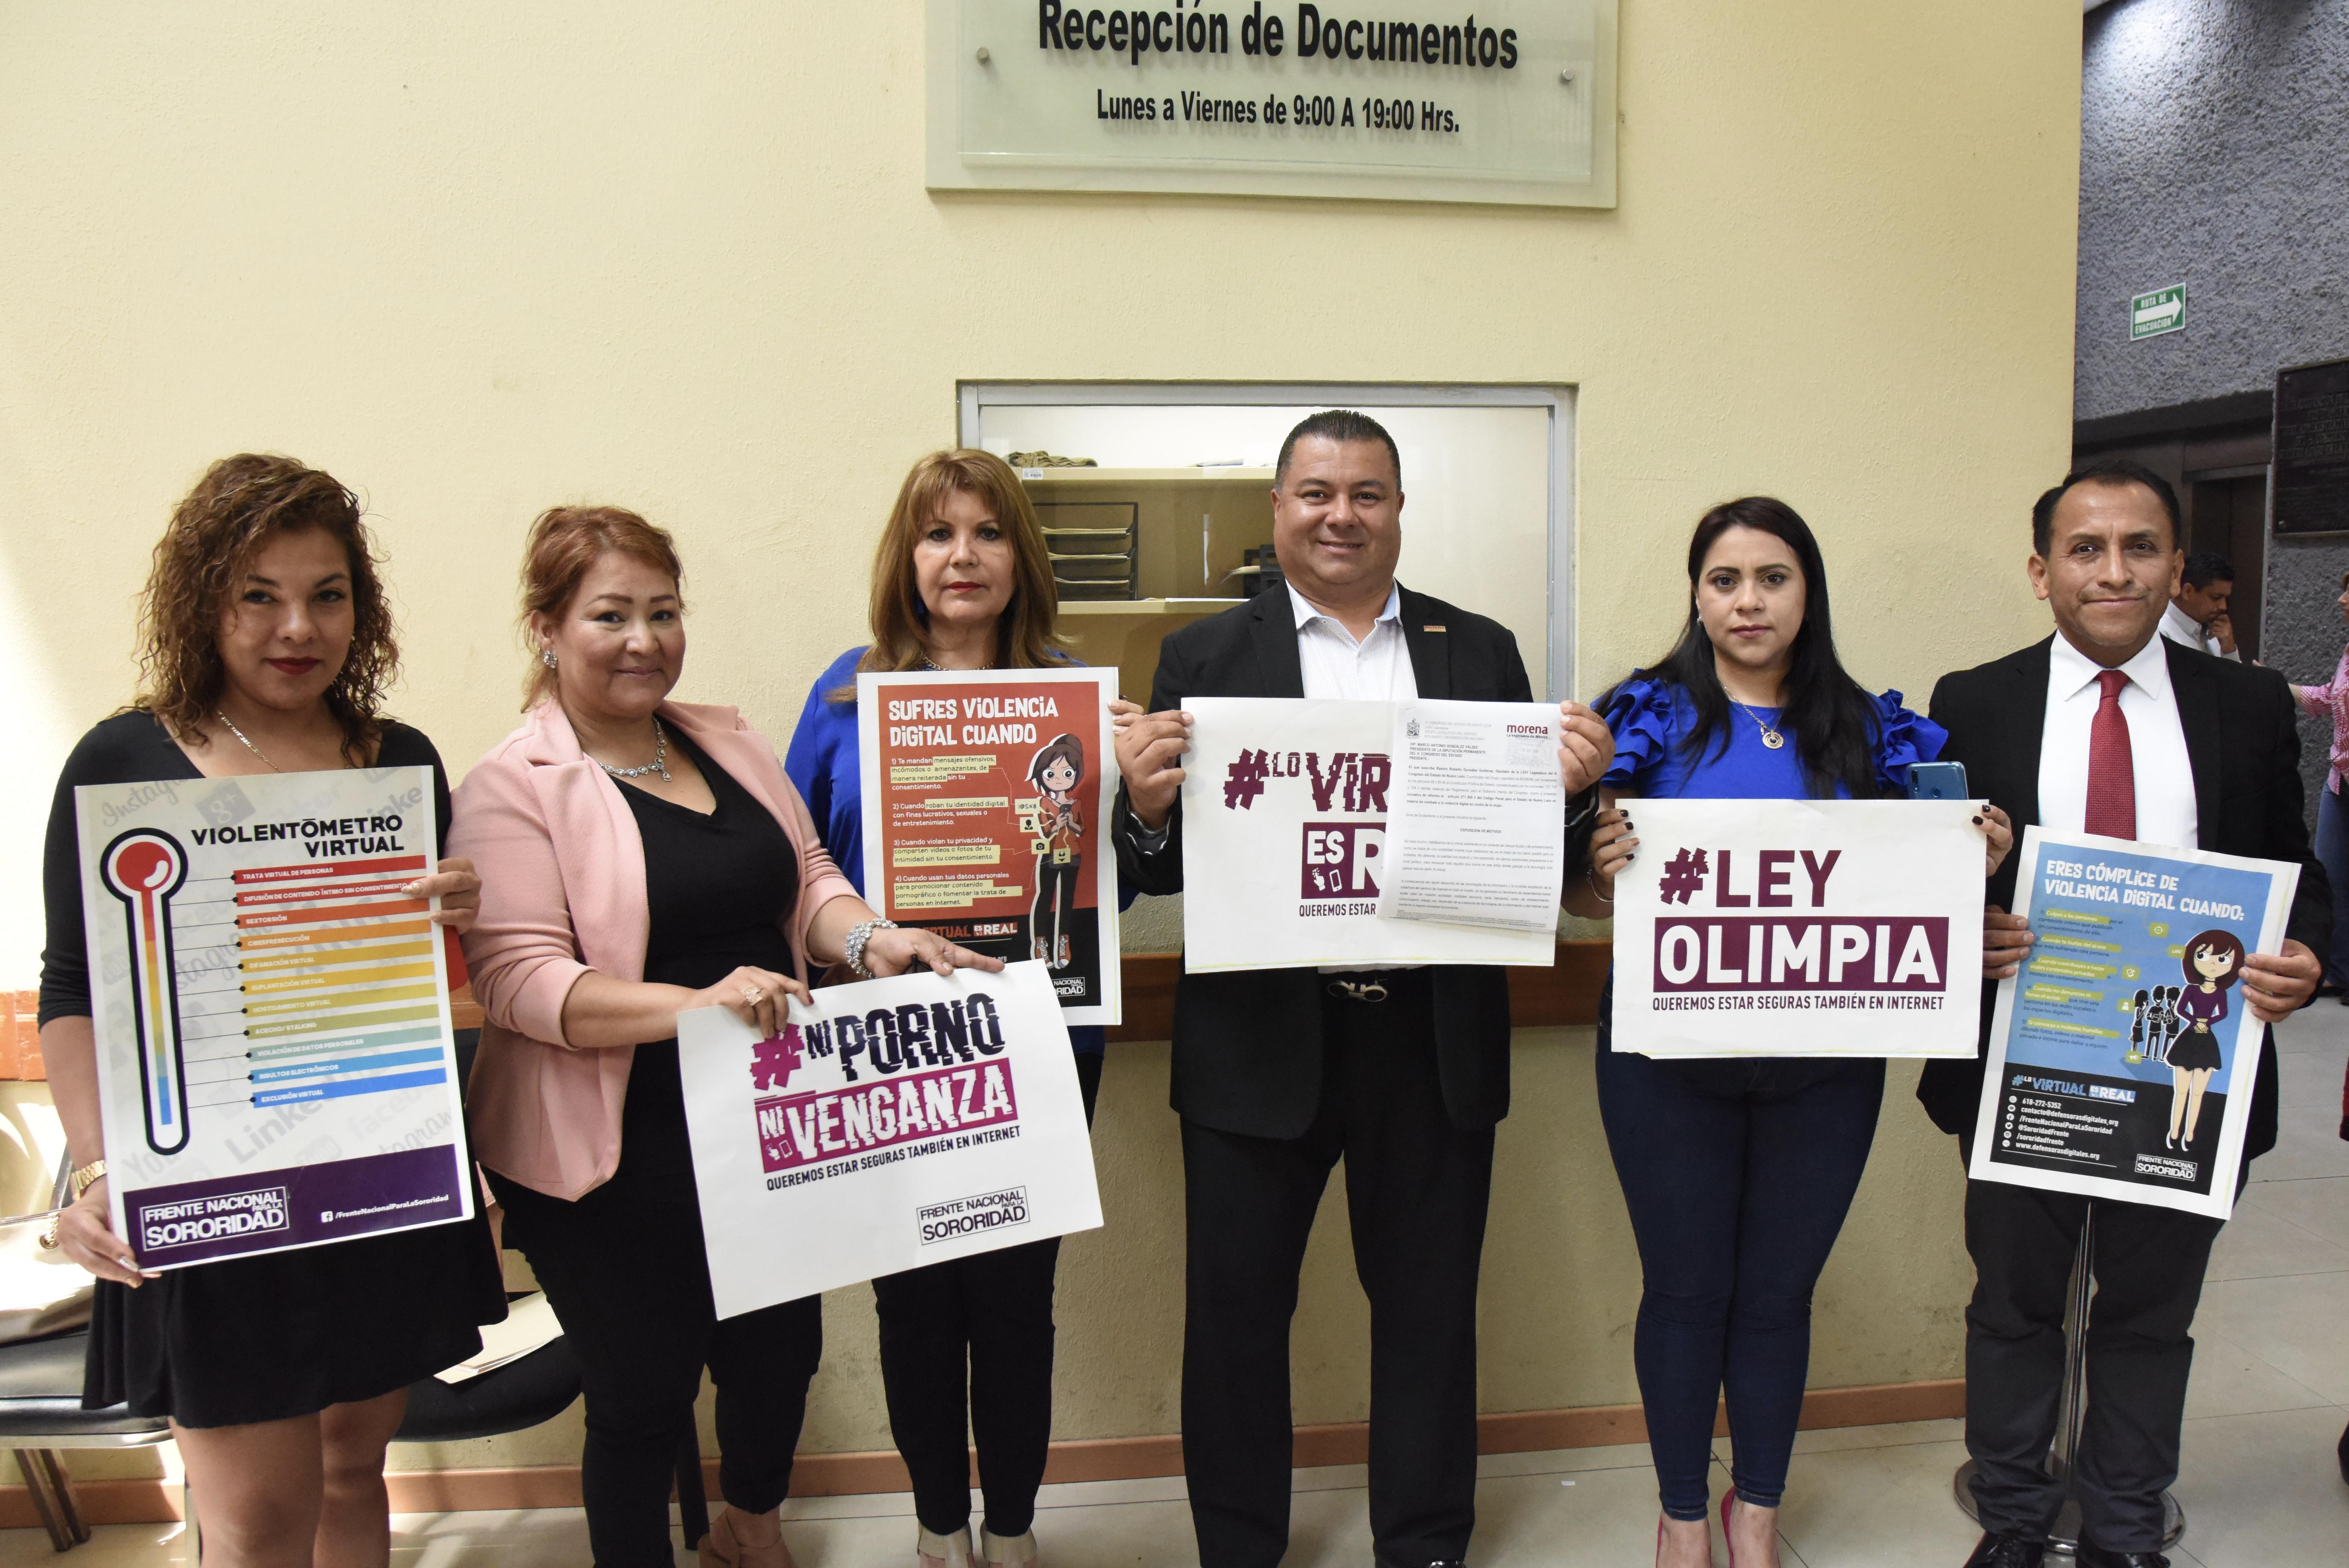 Presenta Diputado Ramiro González iniciativa para fortalecer el combate contra la violencia digital dirigida a las mujeres de Nuevo León.